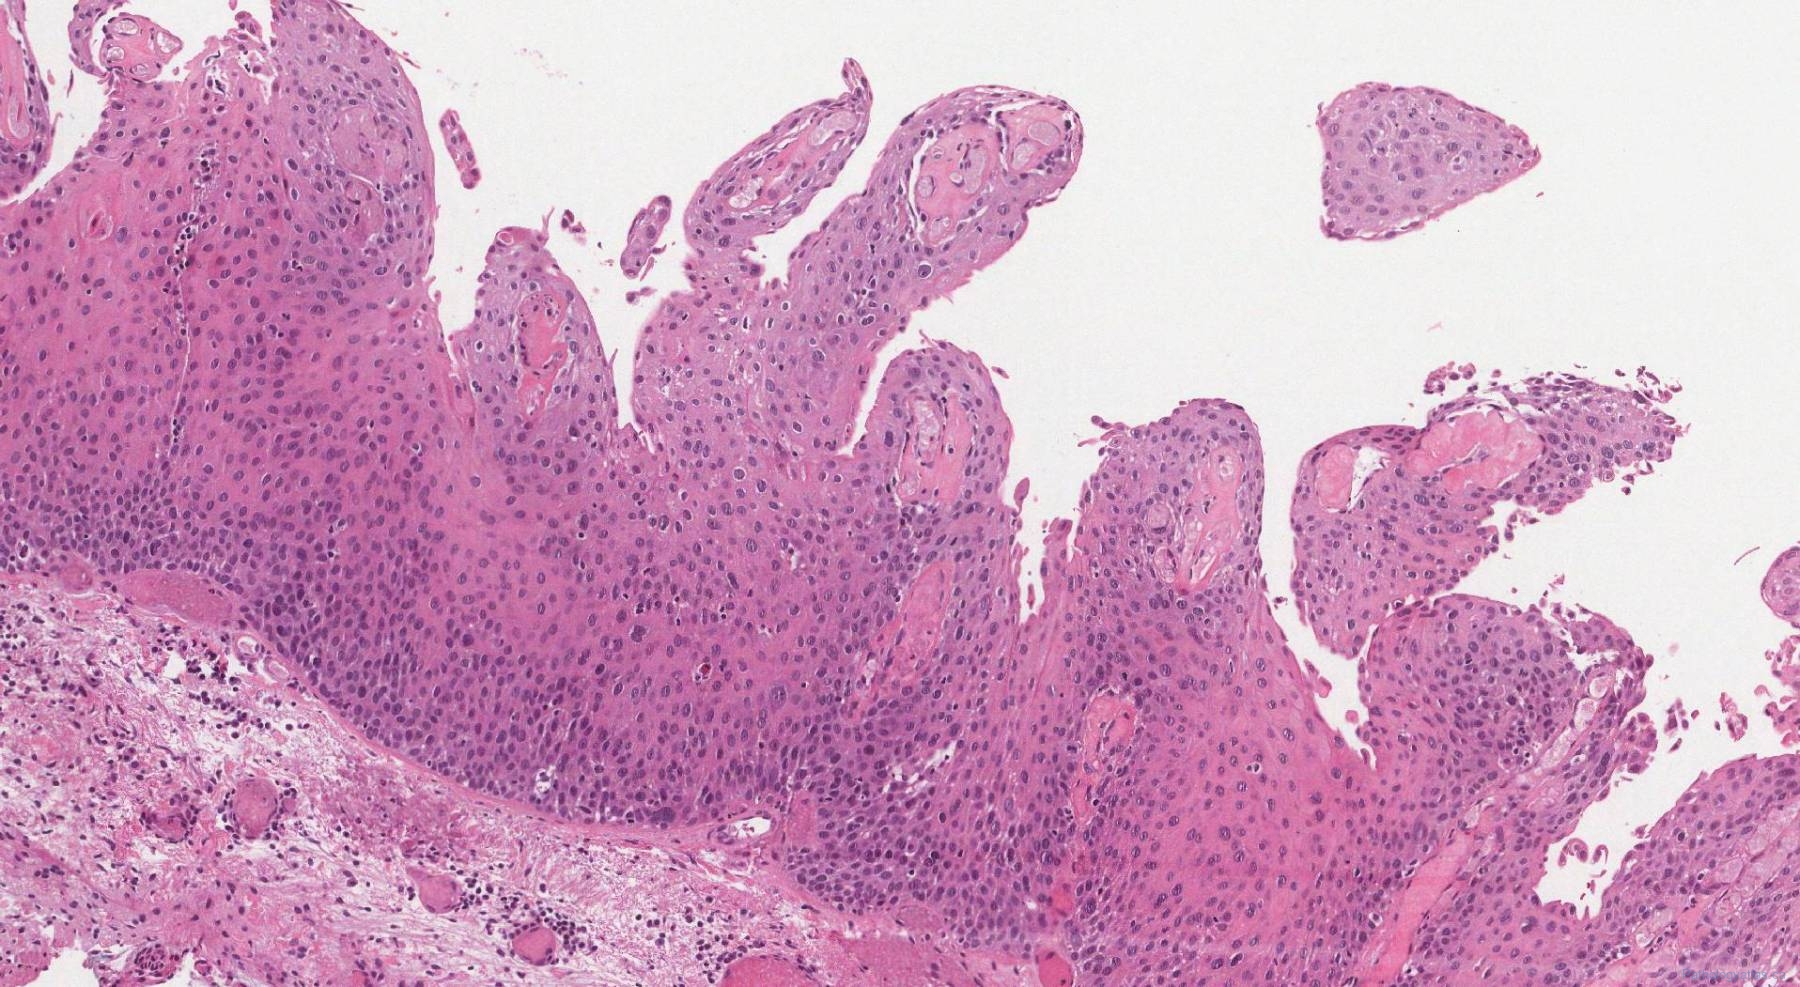 Keratinizing squamous dysplasia of the larynx | Atlas of Pathology